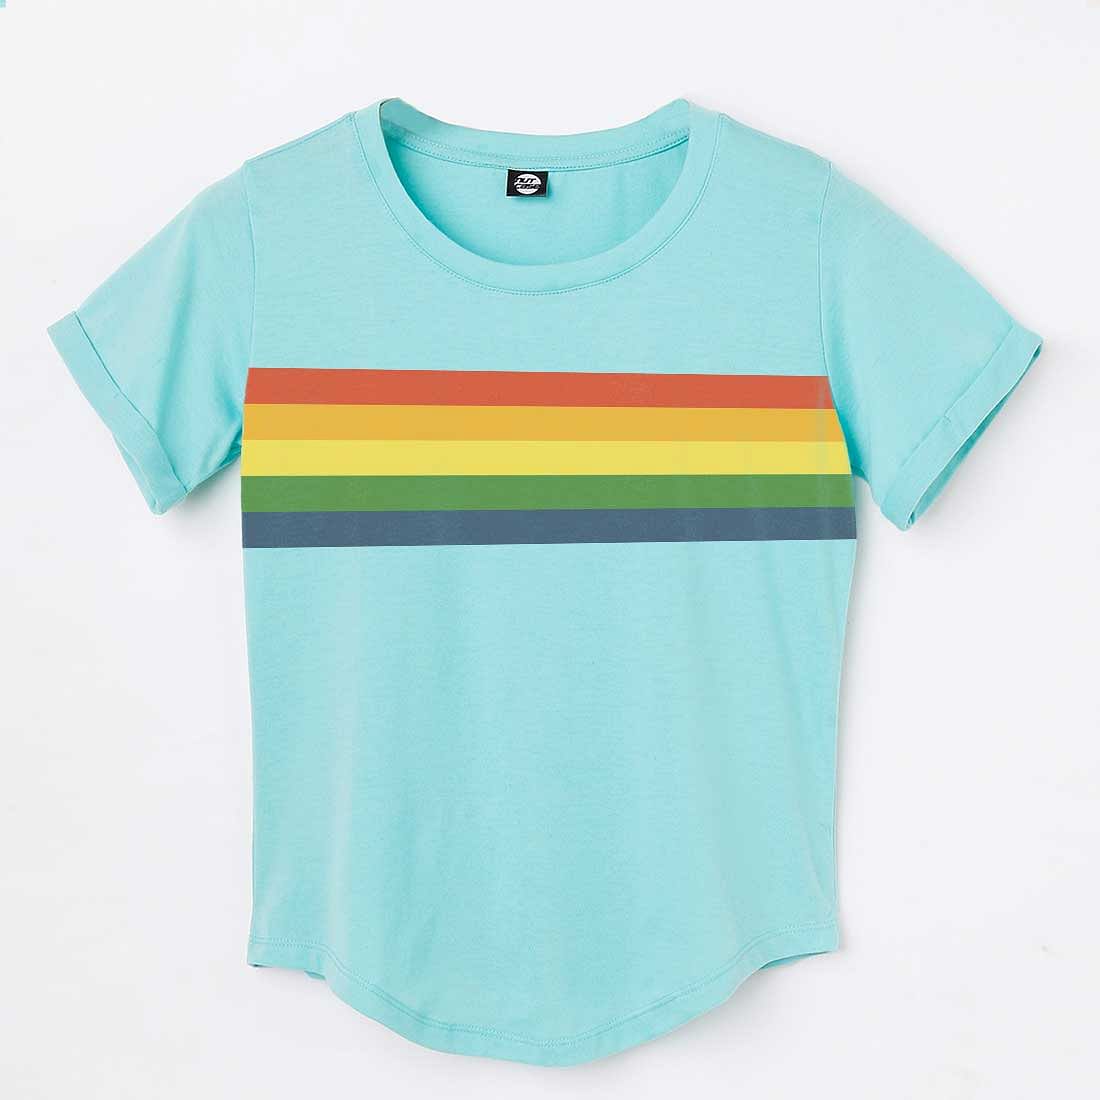 Nutcase LBGTQ Pride Tshirt For Women  - Rainbow Nutcase